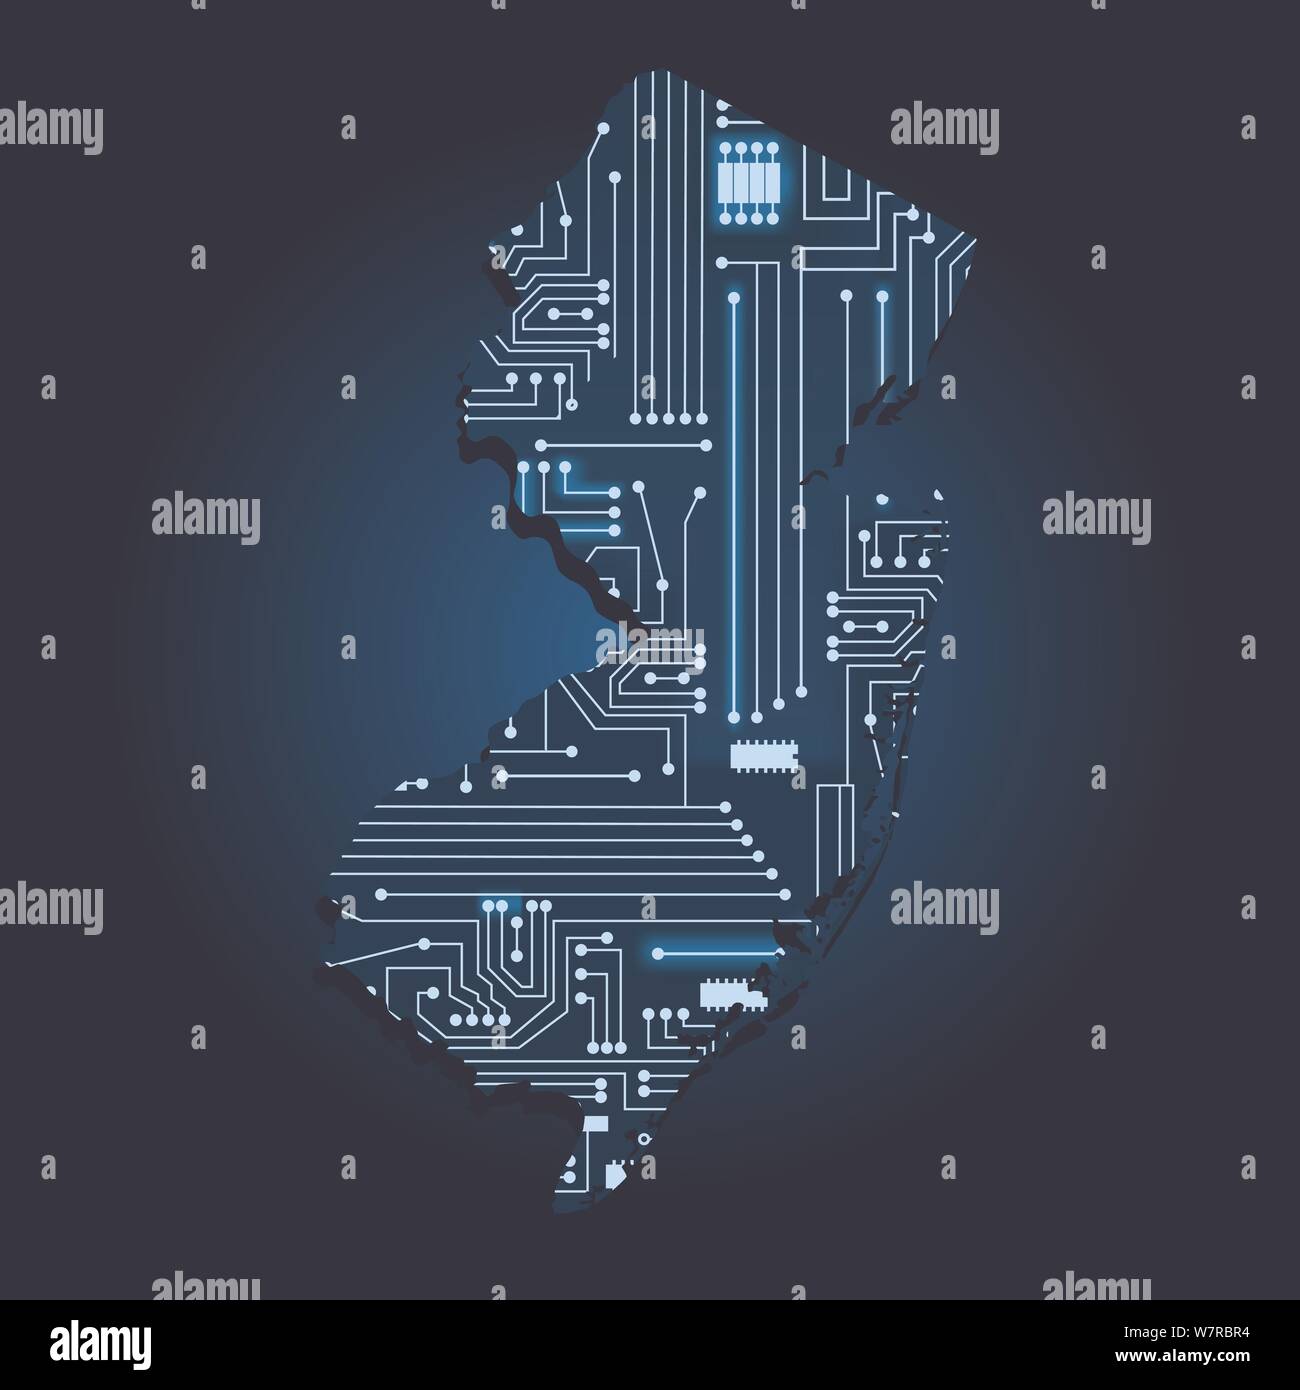 Kontur karte von New Jersey mit einem Technische Elektronik Schaltung. USA Staat. Blauen Hintergrund. Stock Vektor